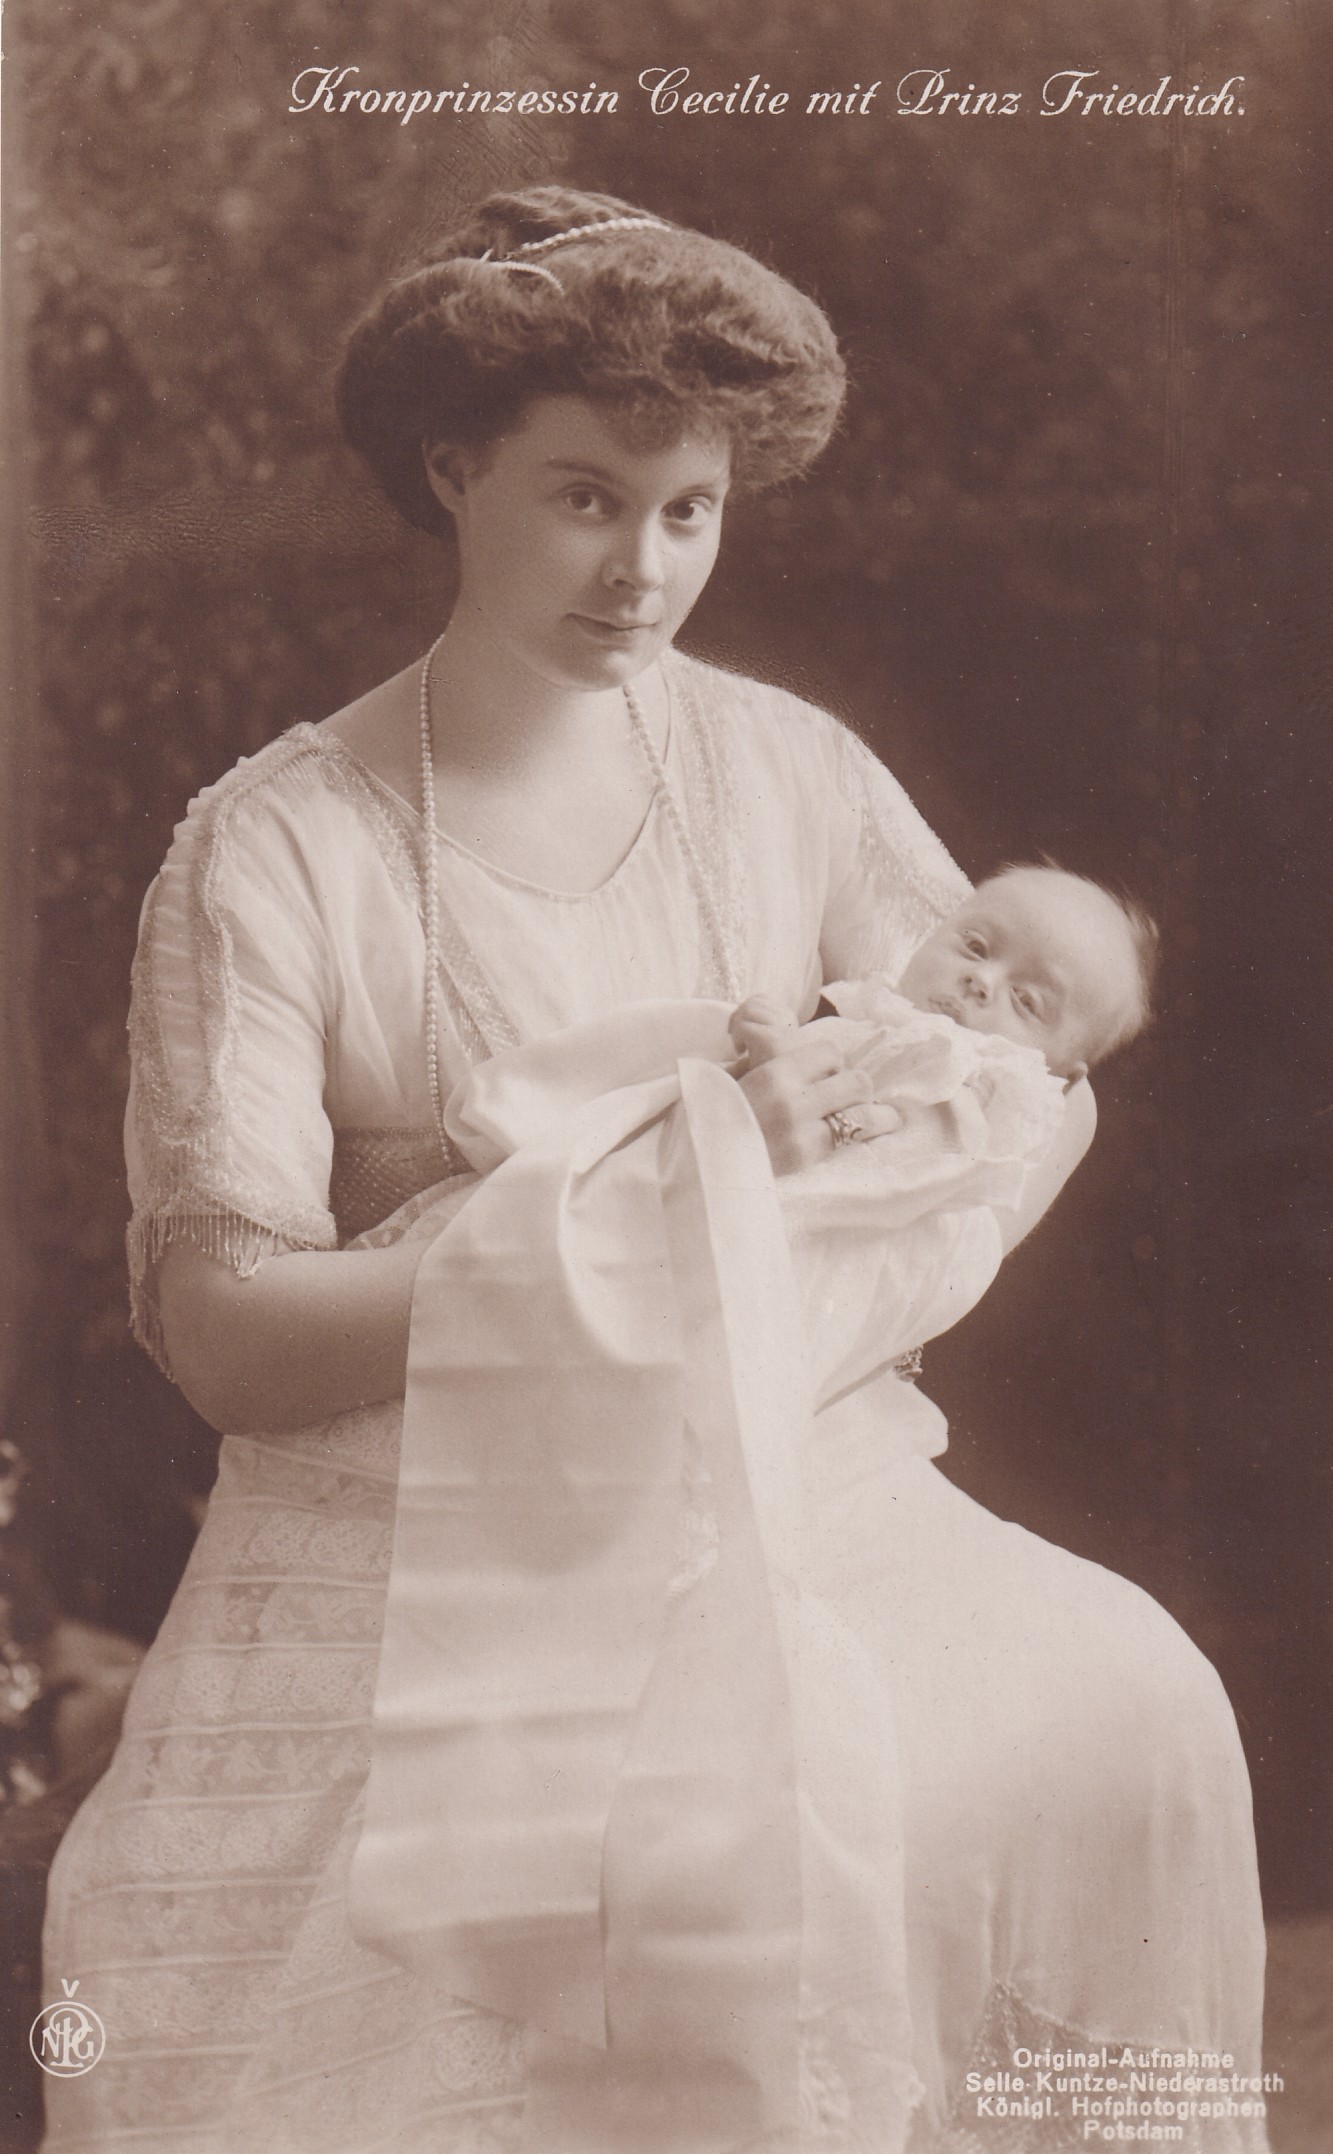 Bildpostkarte mit Foto der Kronprinzessin Cecilie mit ihrem Sohn Friedrich, 1912 (Schloß Wernigerode GmbH RR-F)